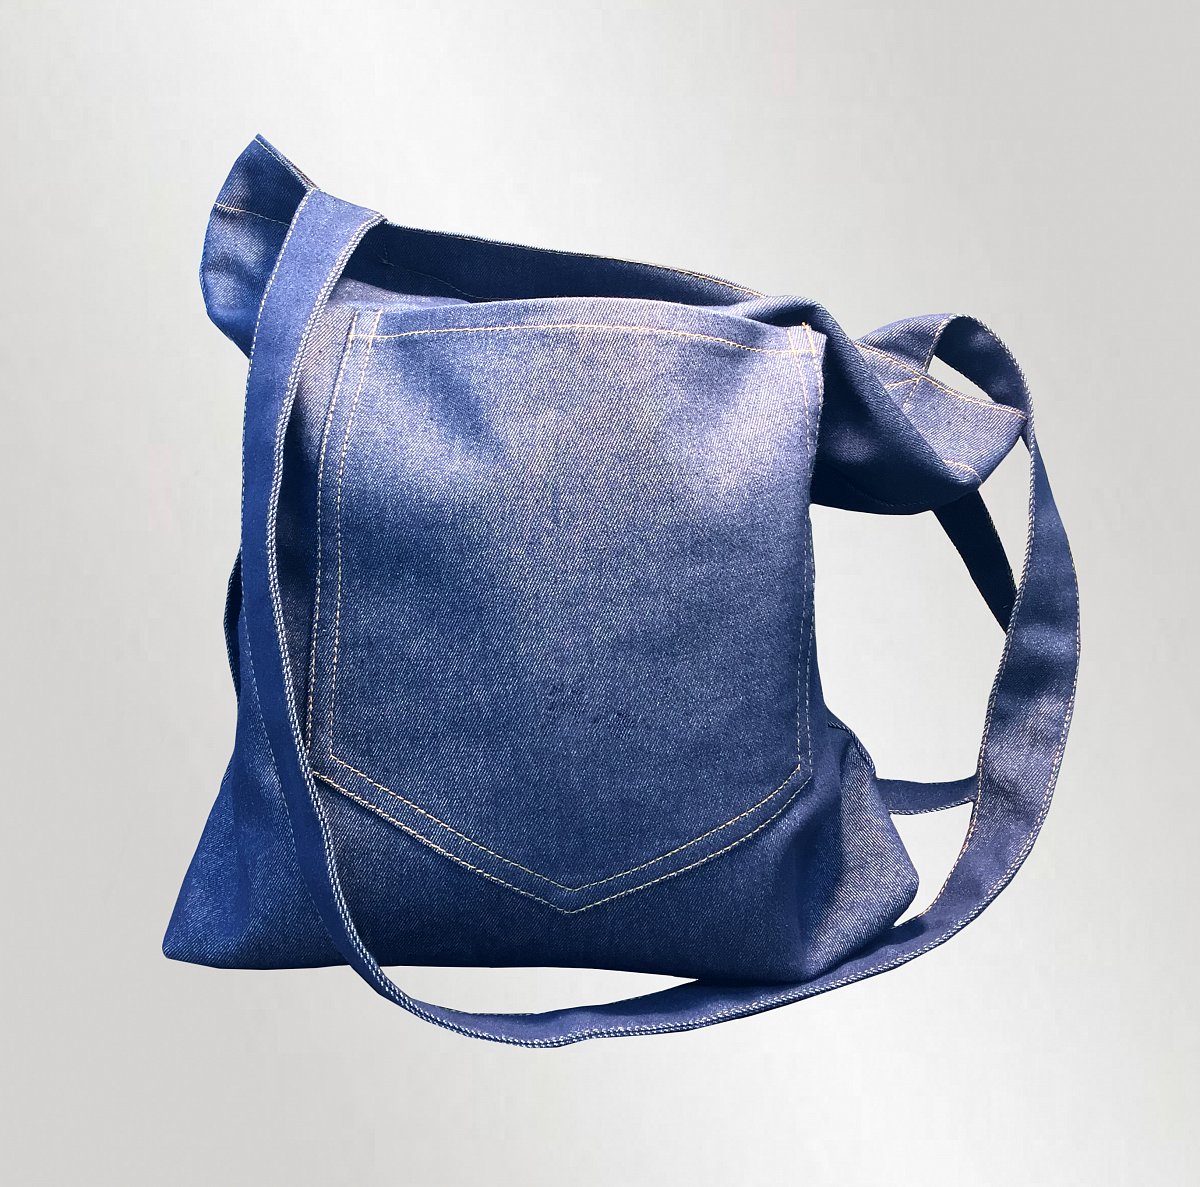 Пошив промо сумок - пример изделия: Джинсовая промо сумка